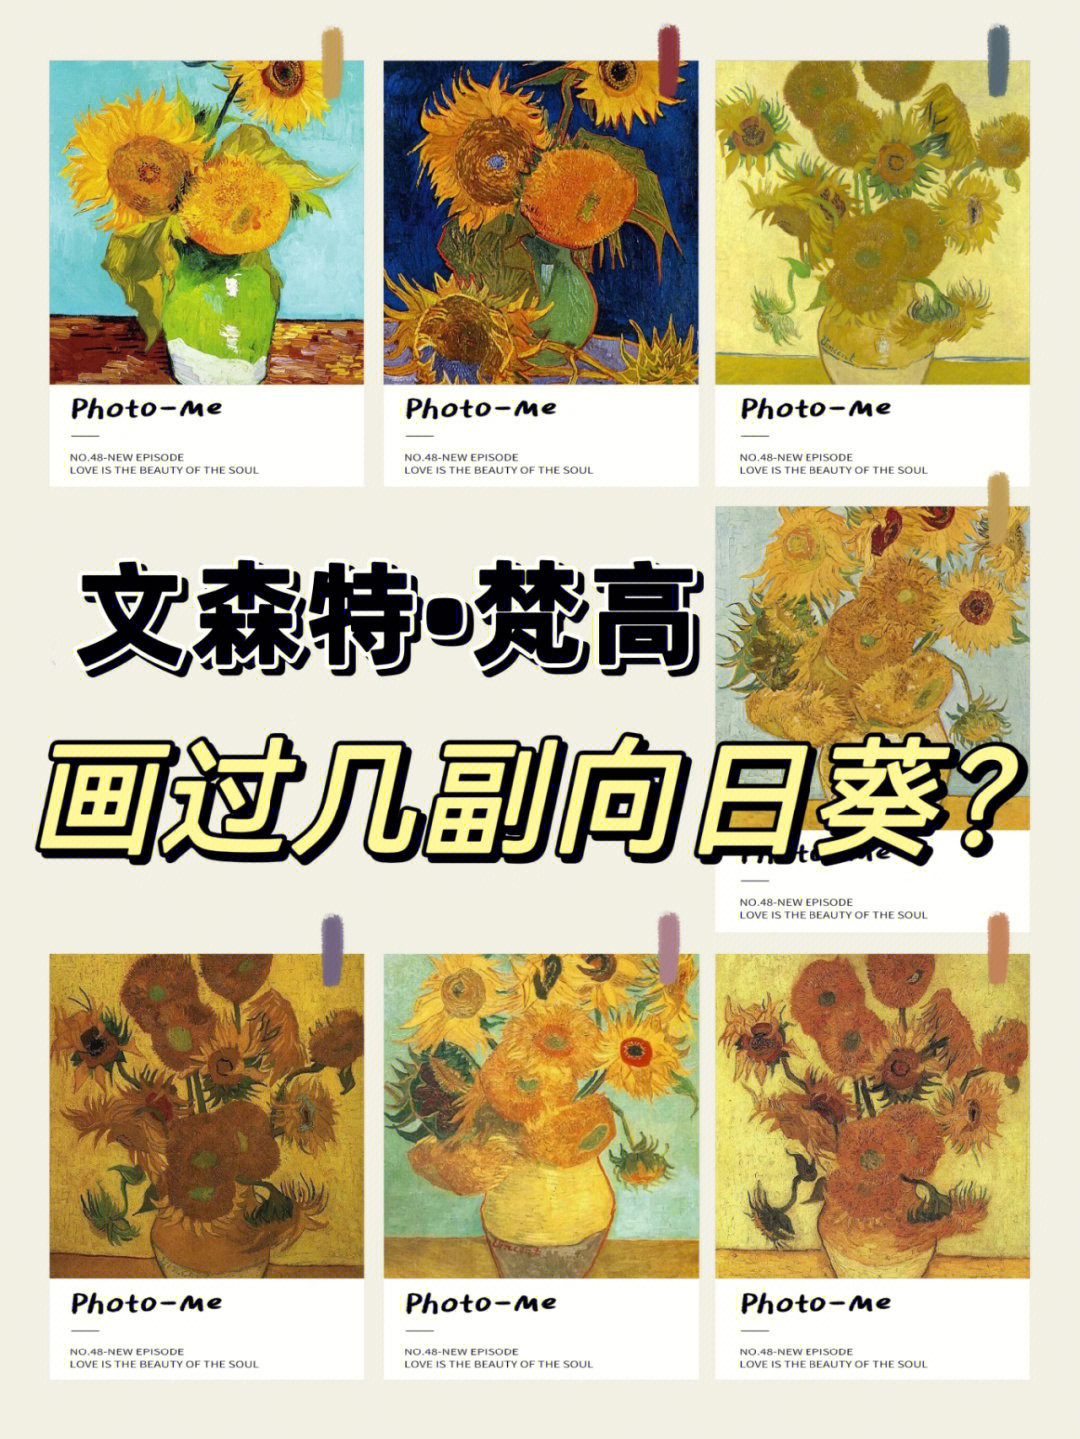 [彩虹r]梵高的《向日葵》是他最经典的作品之一,但是大家知道吗?